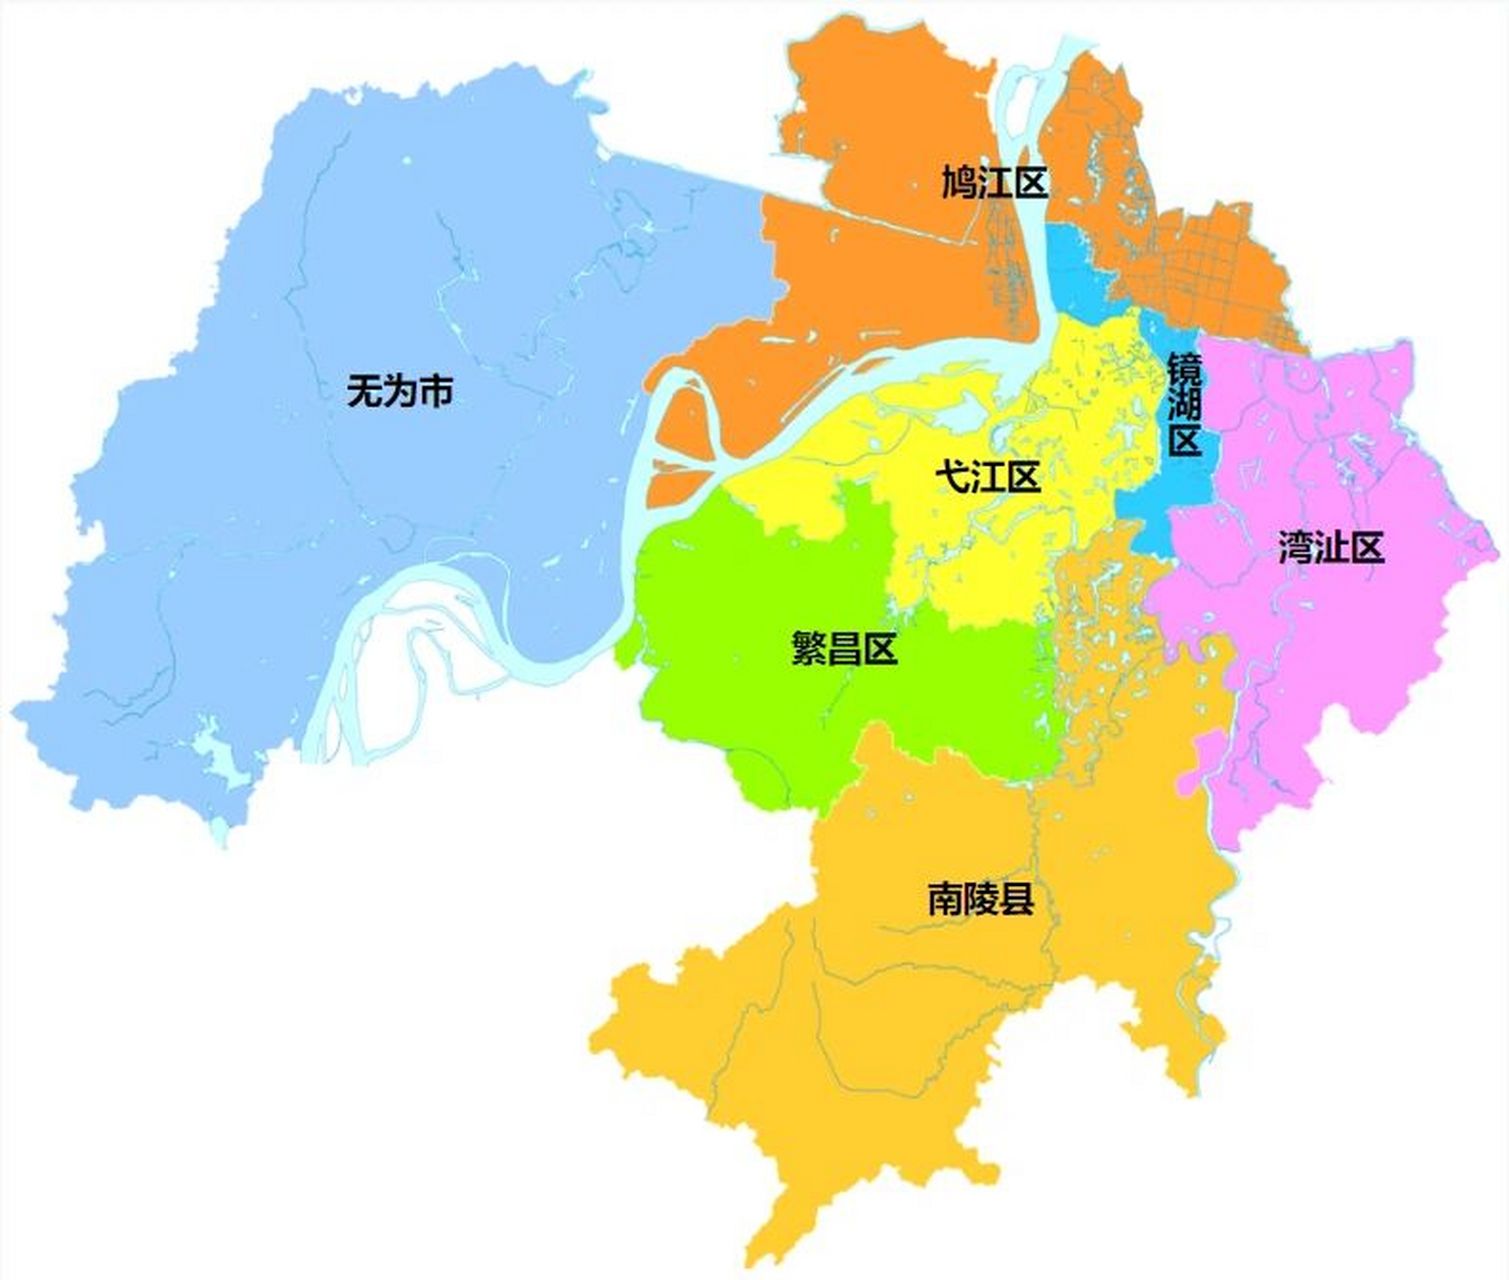 芜湖全市划分为 5个区:镜湖区,鸠江区,弋江区,湾沚区,繁昌区; 1个